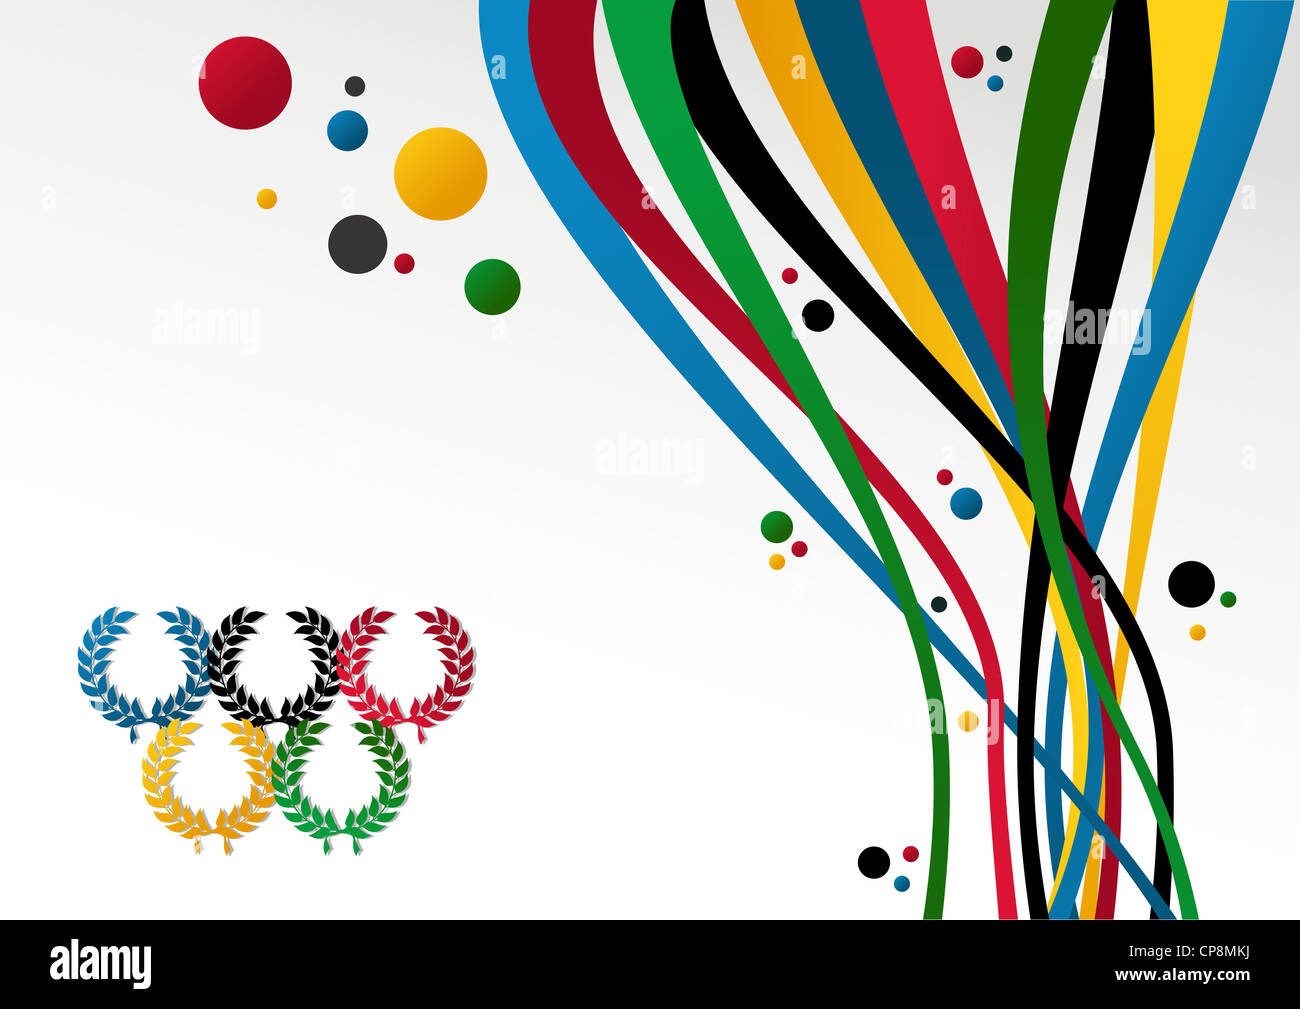 Olympischen Spiele Lorbeer Kranz, Bänder und Ringe auf weißem Hintergrund. Vektor-Datei geschichtet für einfache Handhabung und Anpassung. Stockfoto